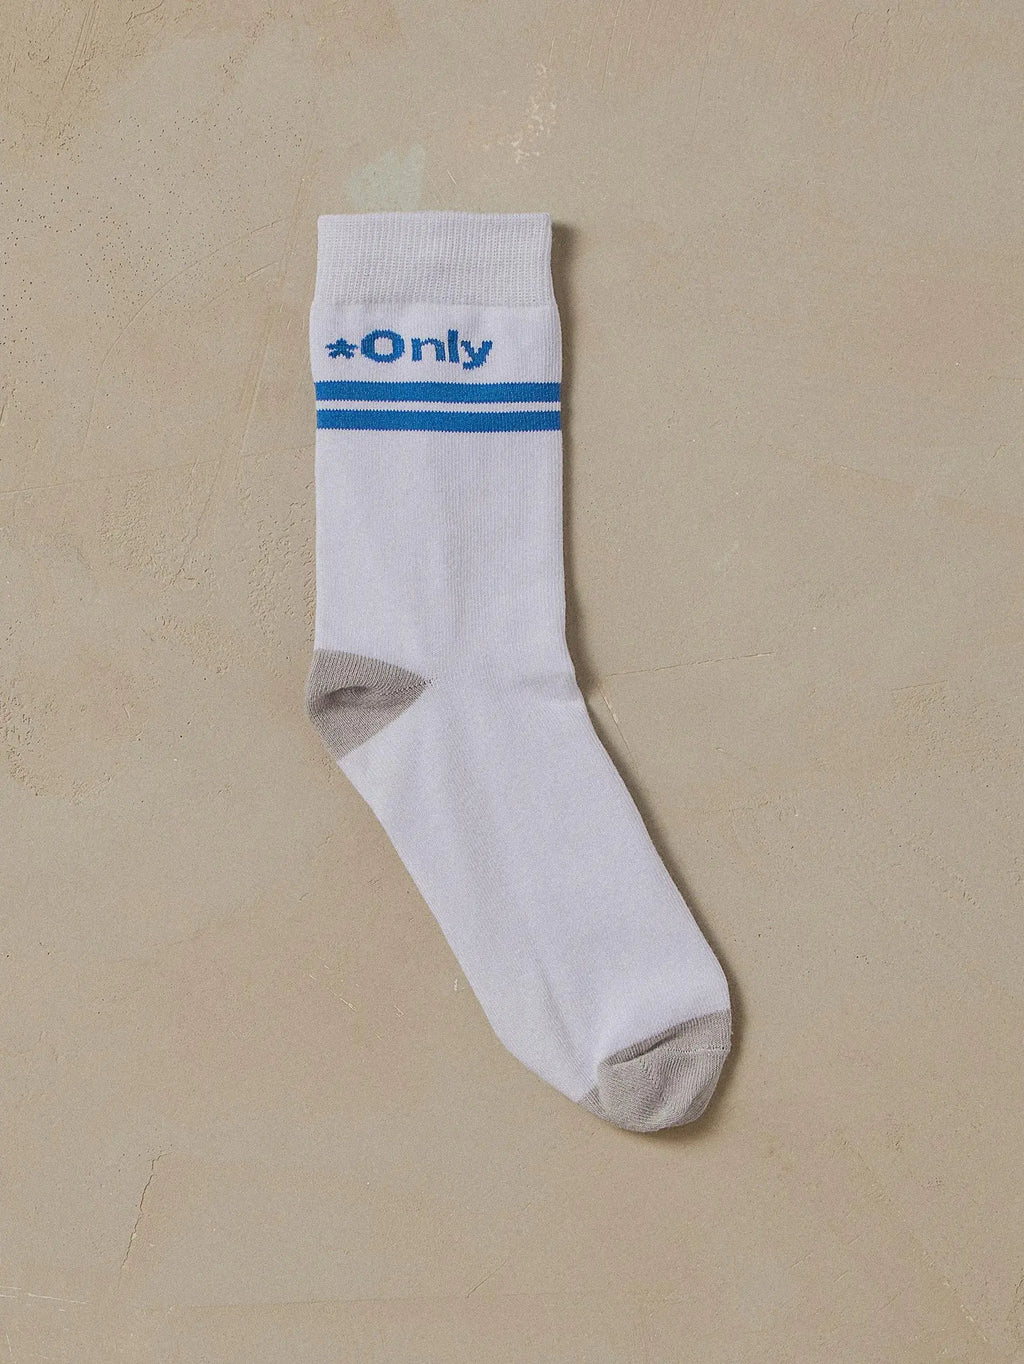 Strangers Only Socks